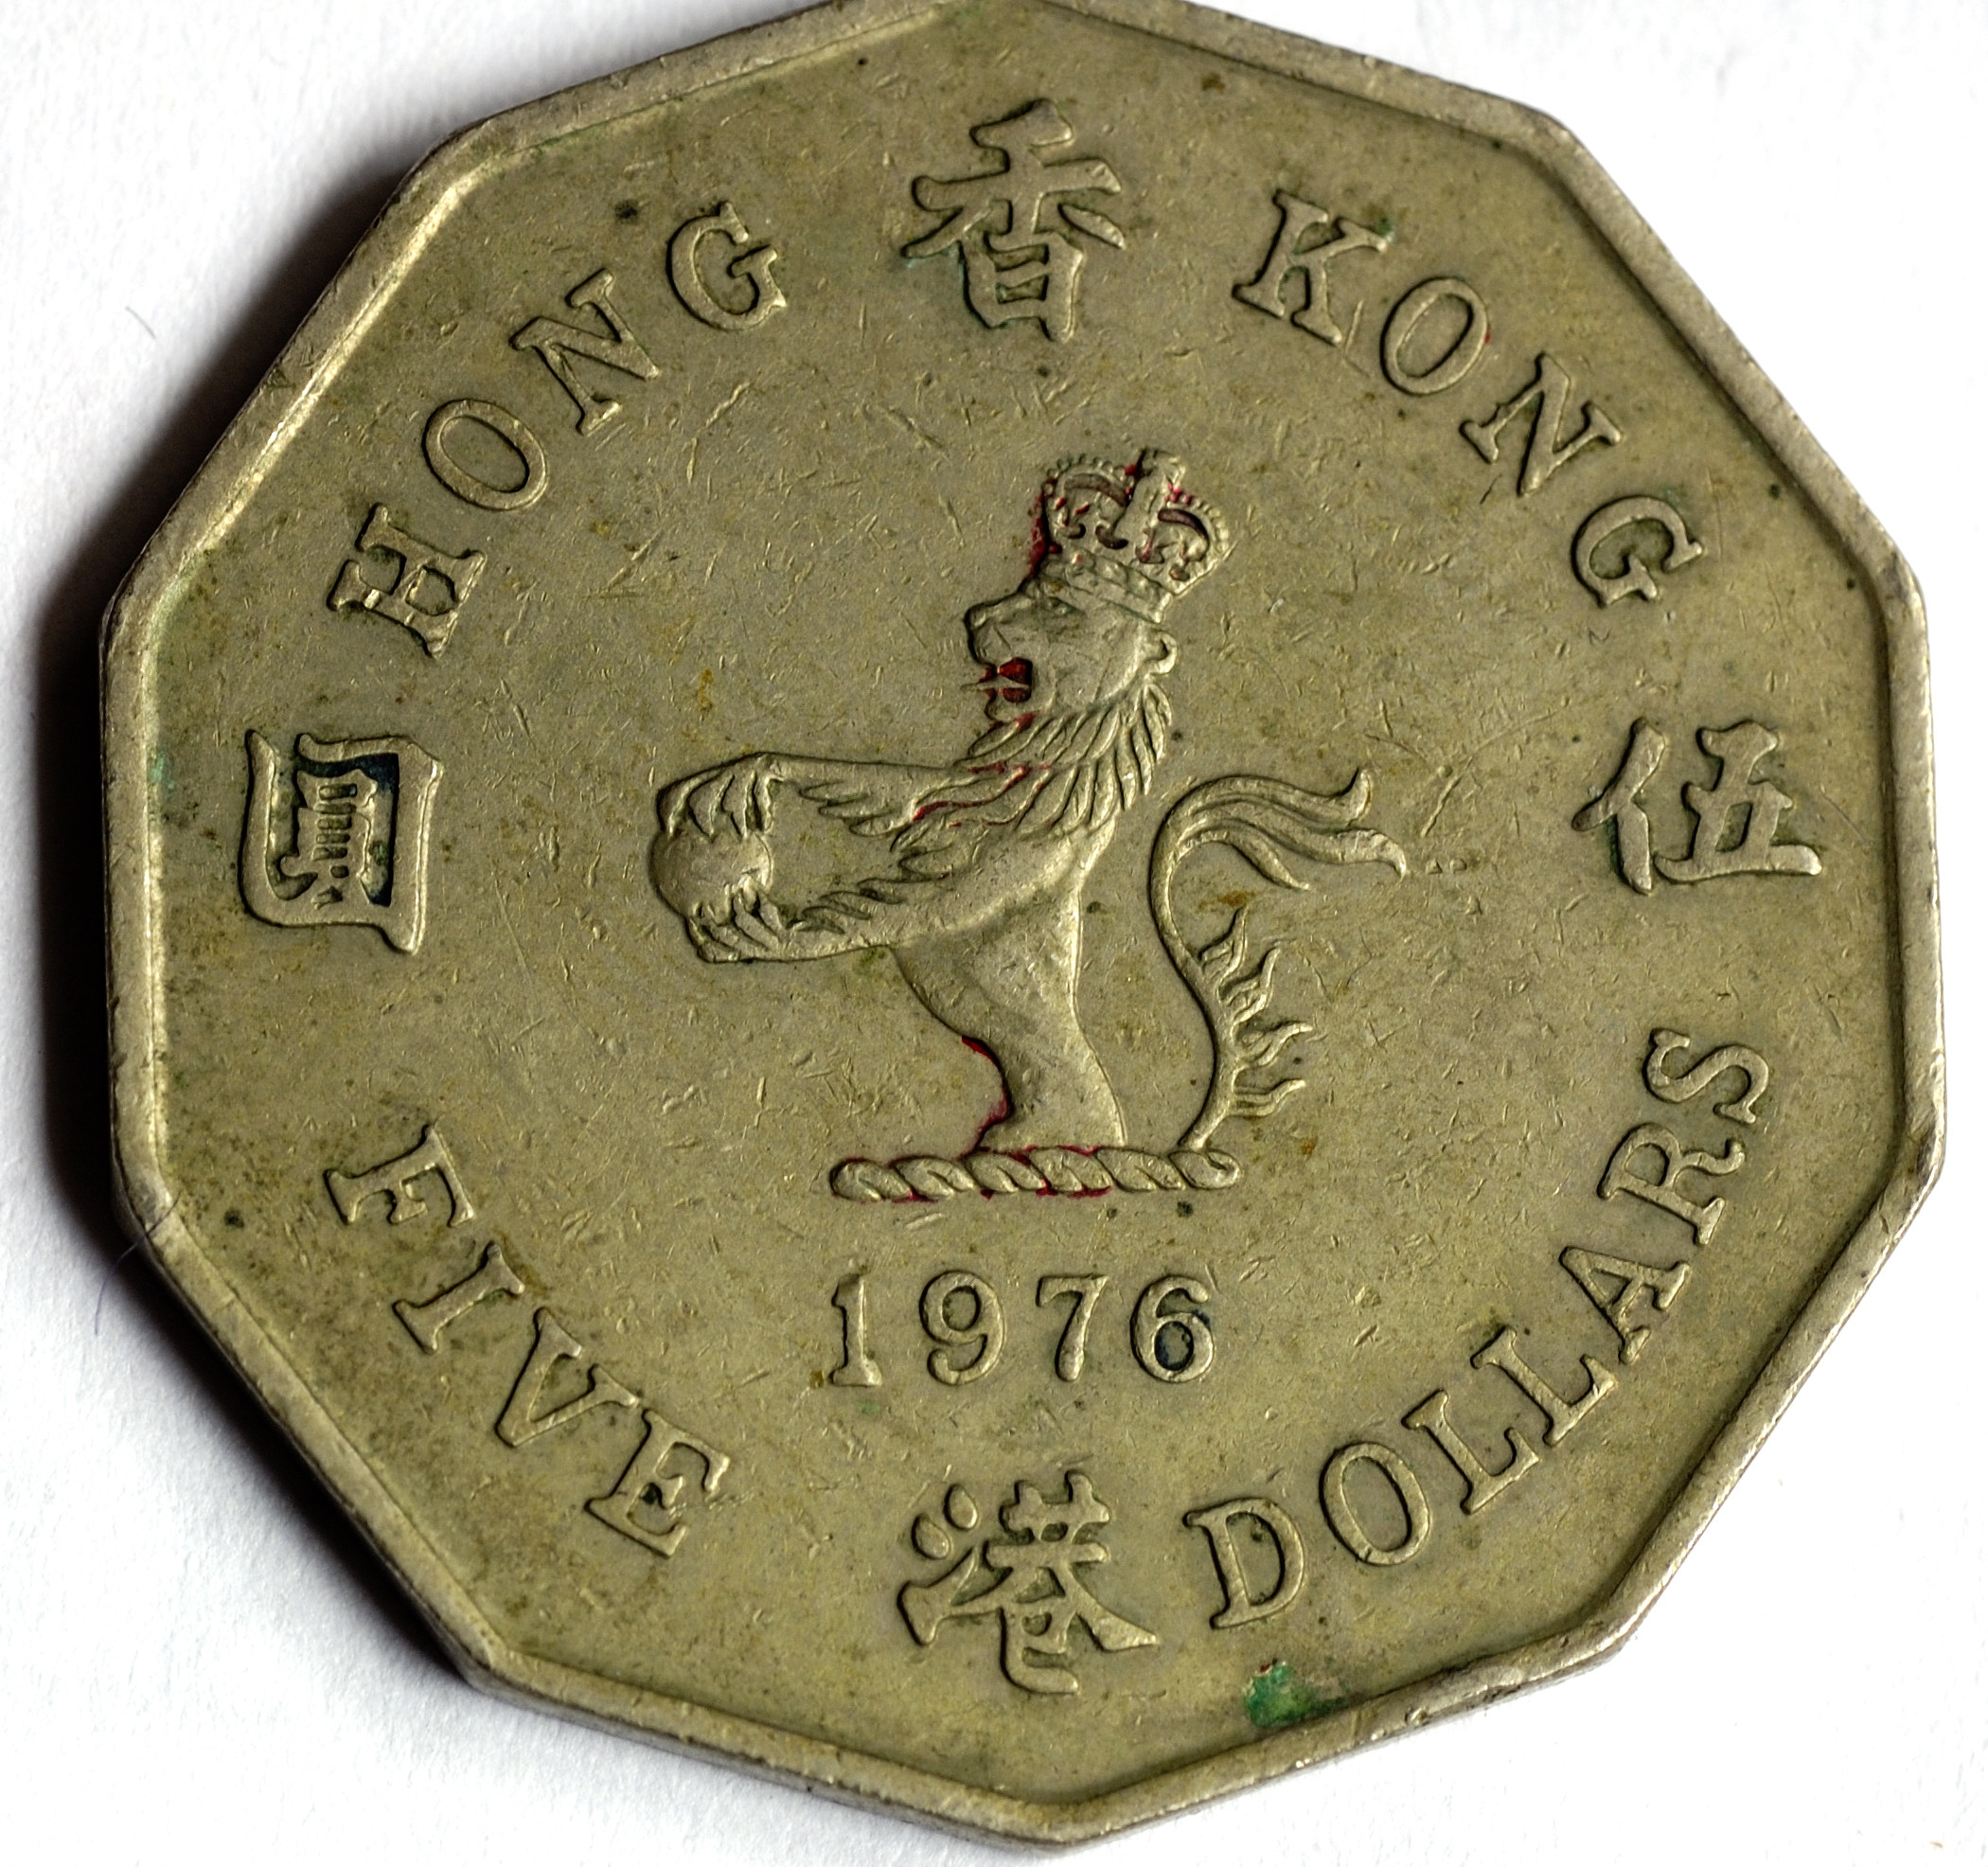 5 Hong Kong dollars 1976 (1)